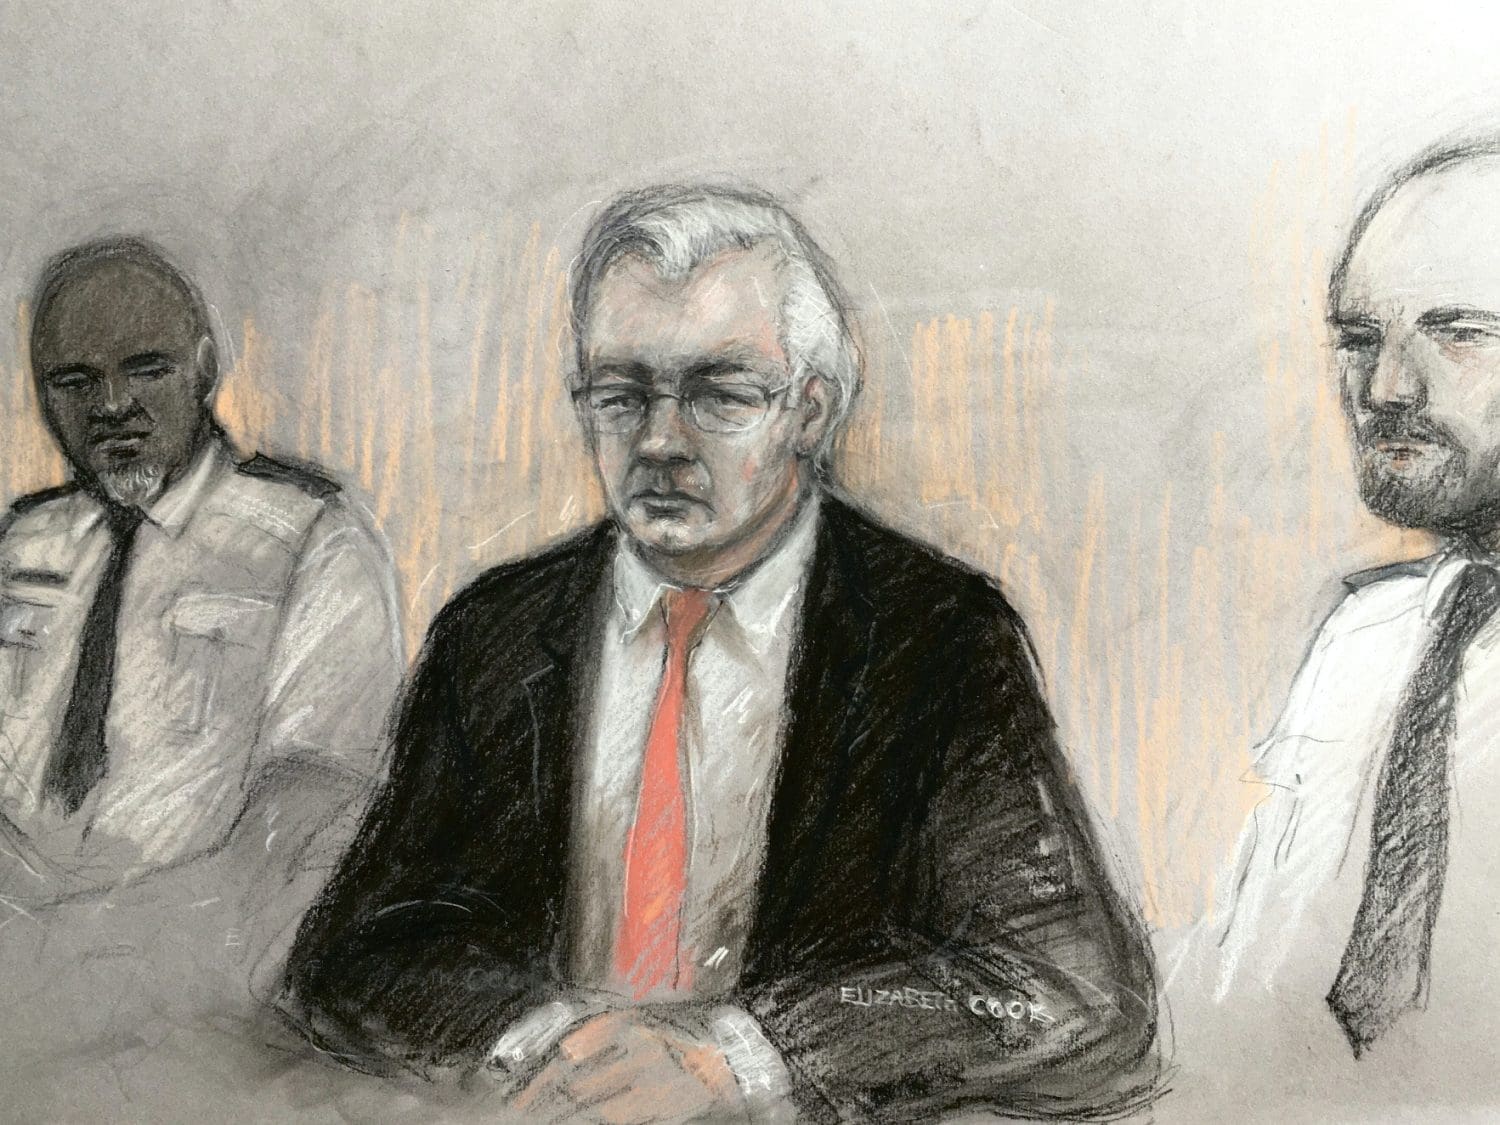 Court drawing of Julian Assange